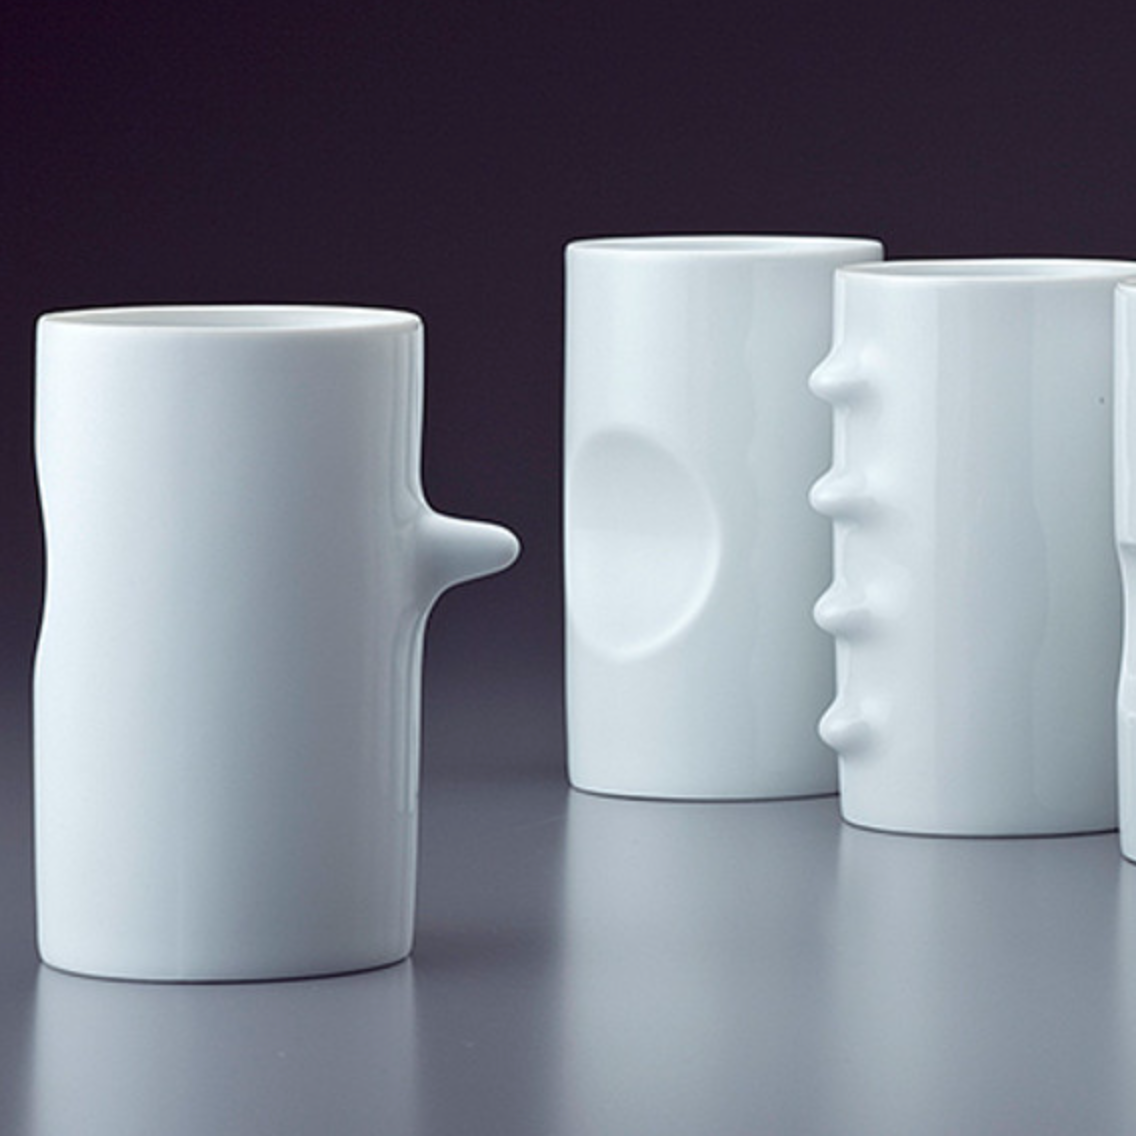 Hakusan Porcelain Teacups, Set of 6